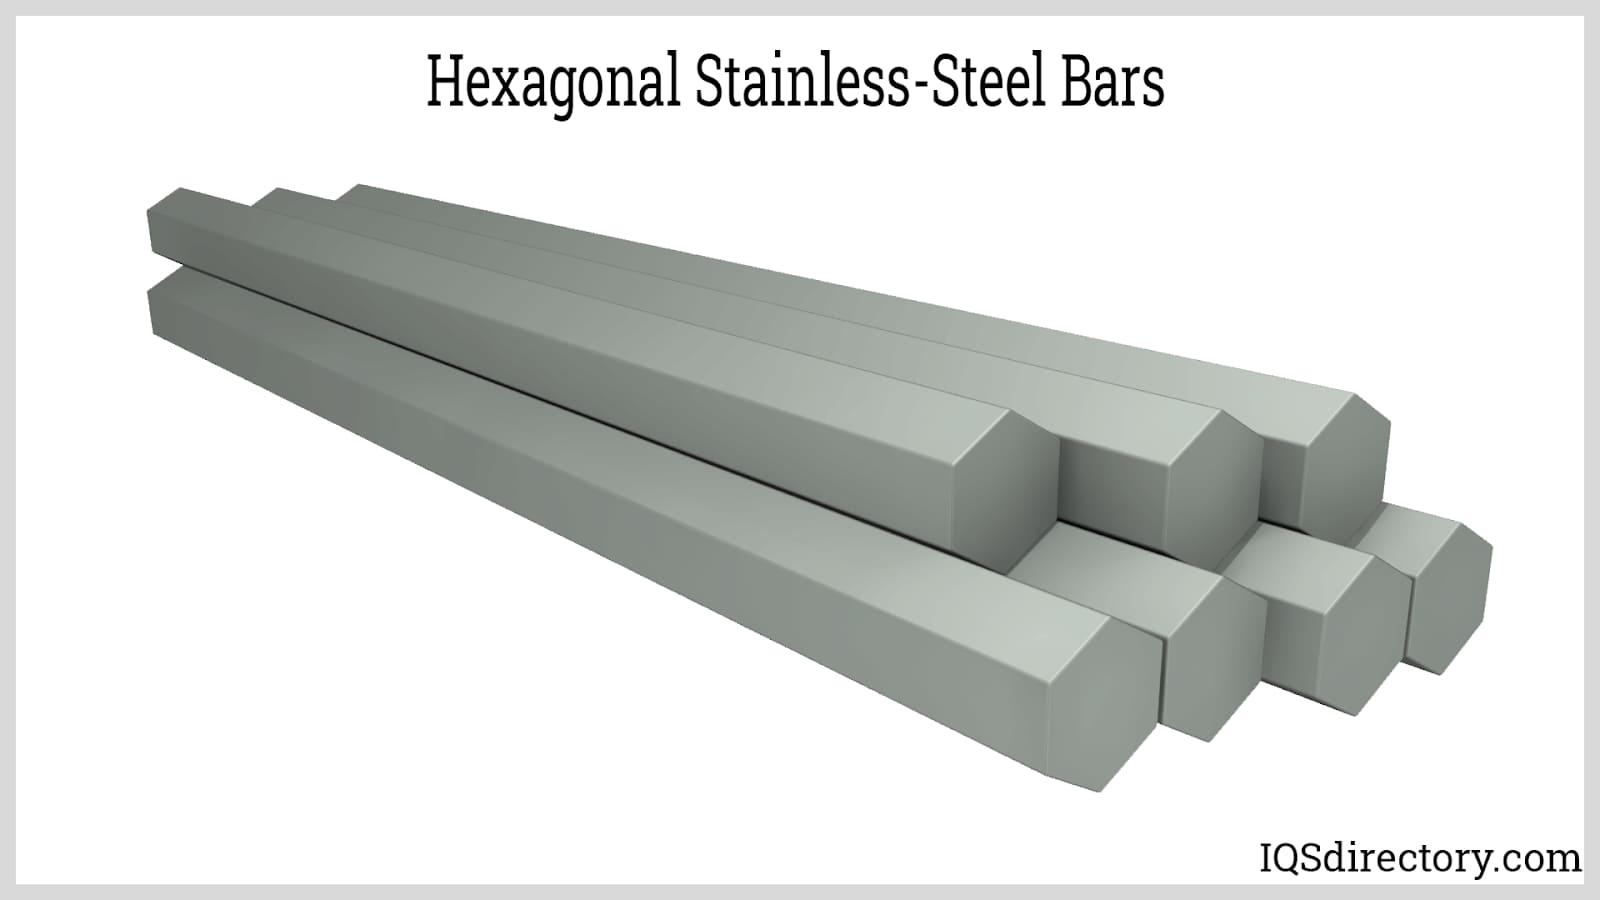 Hexagonal Stainless-Steel Bars